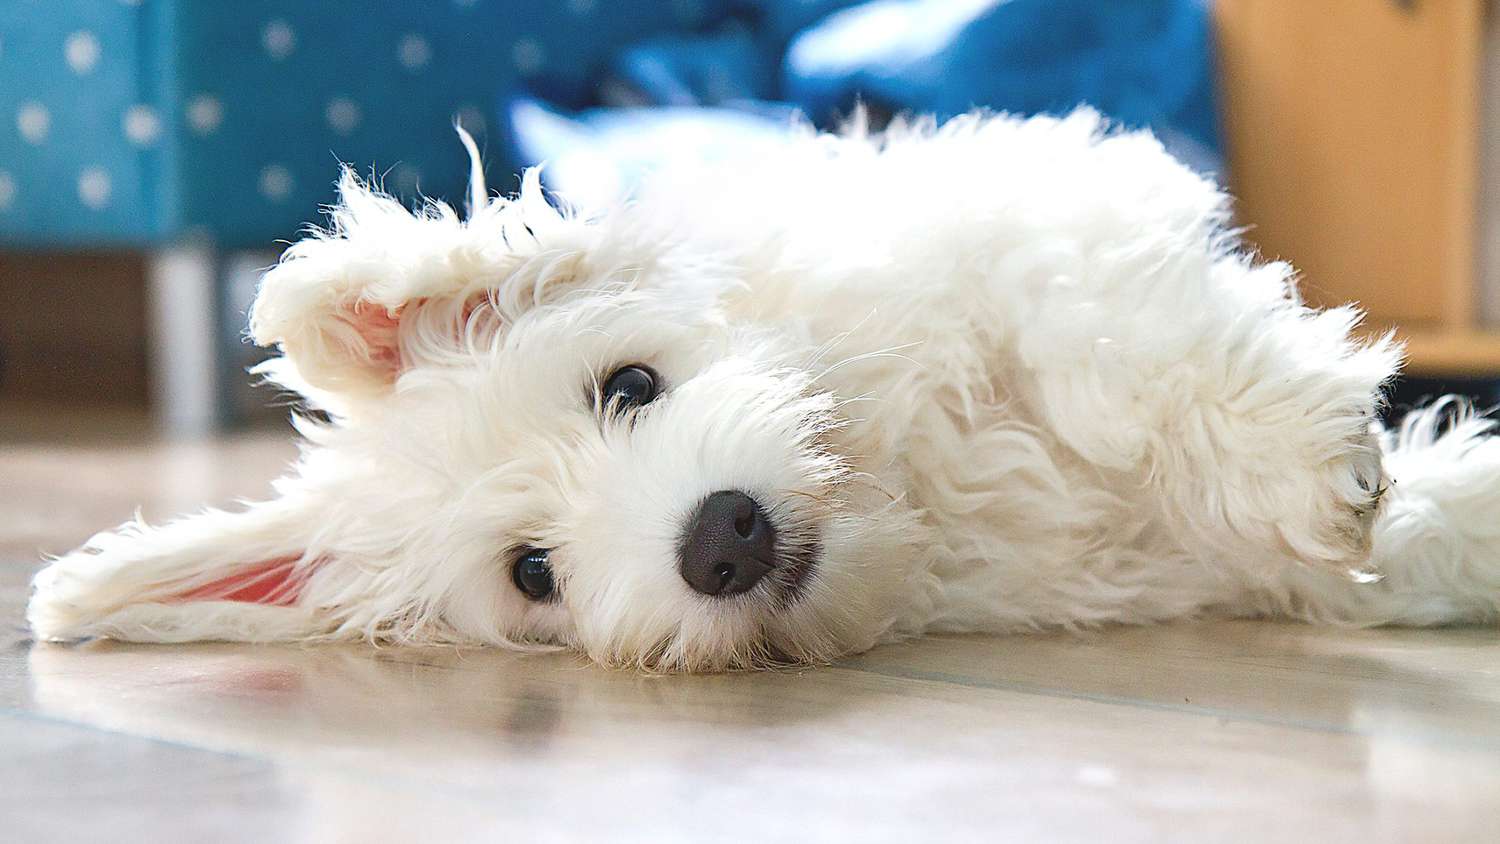 cute coton de tulear dog lying on floor: